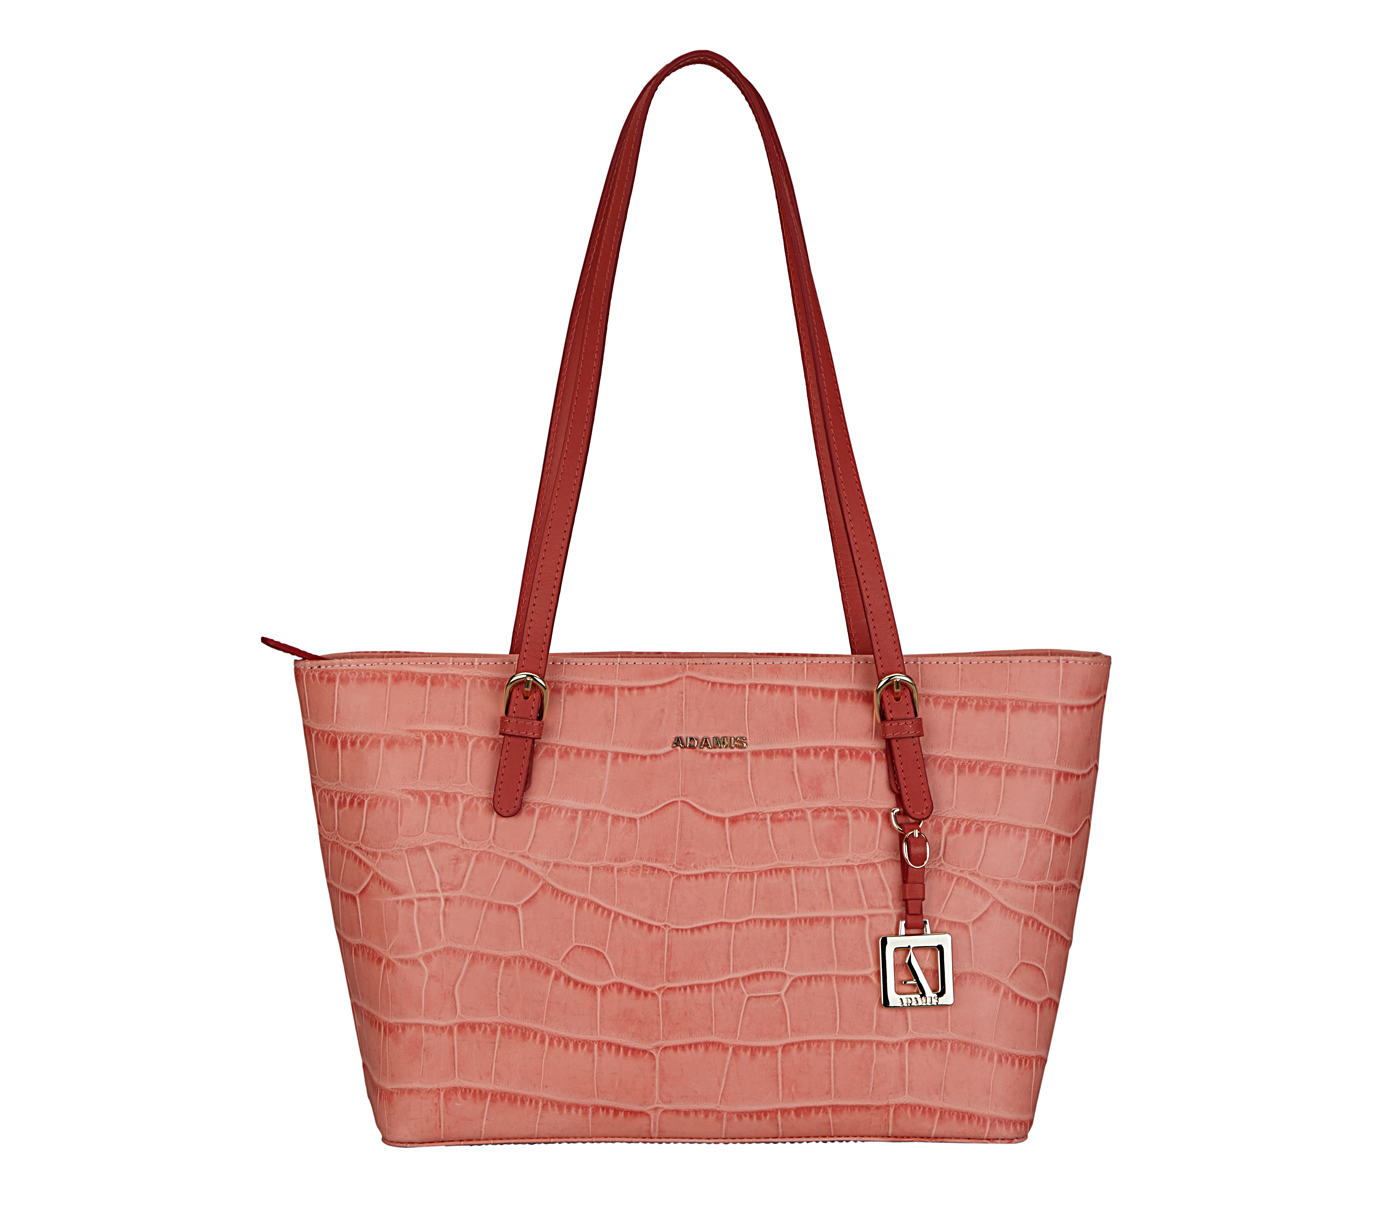 Handbag-Diana-Shoulder work bag in Genuine Leather - Pink.